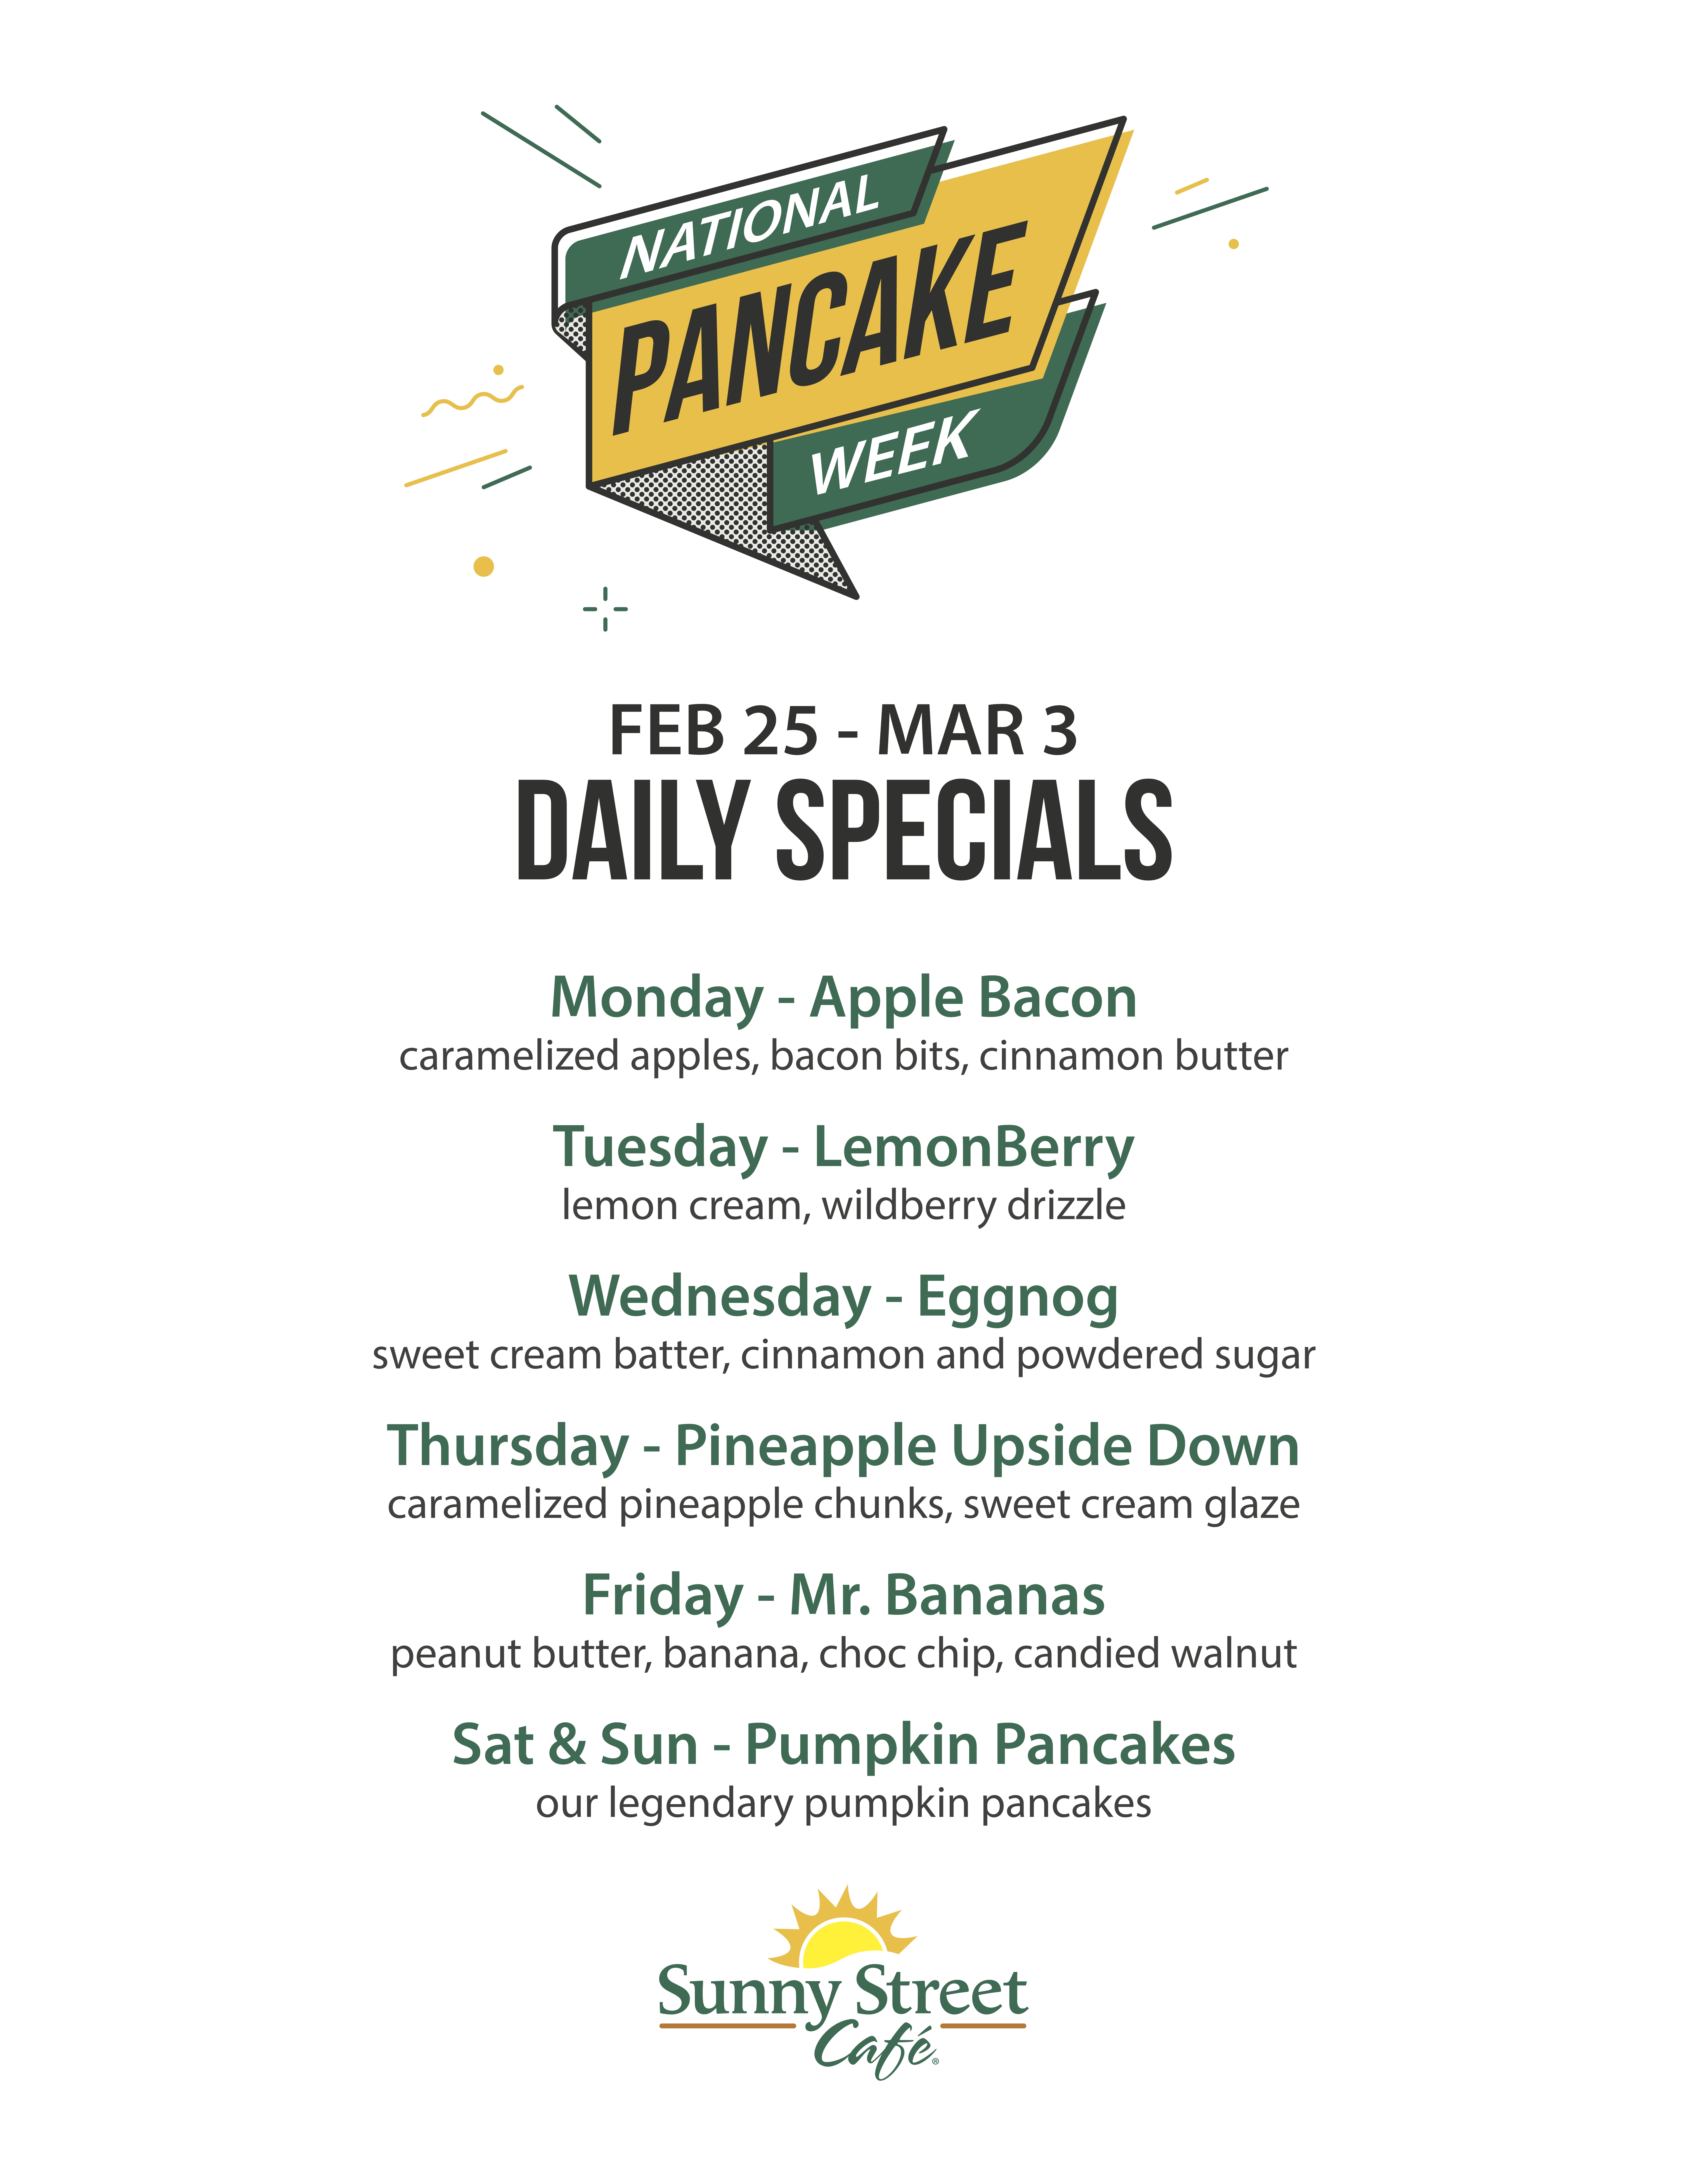 National Pancake Week 2019